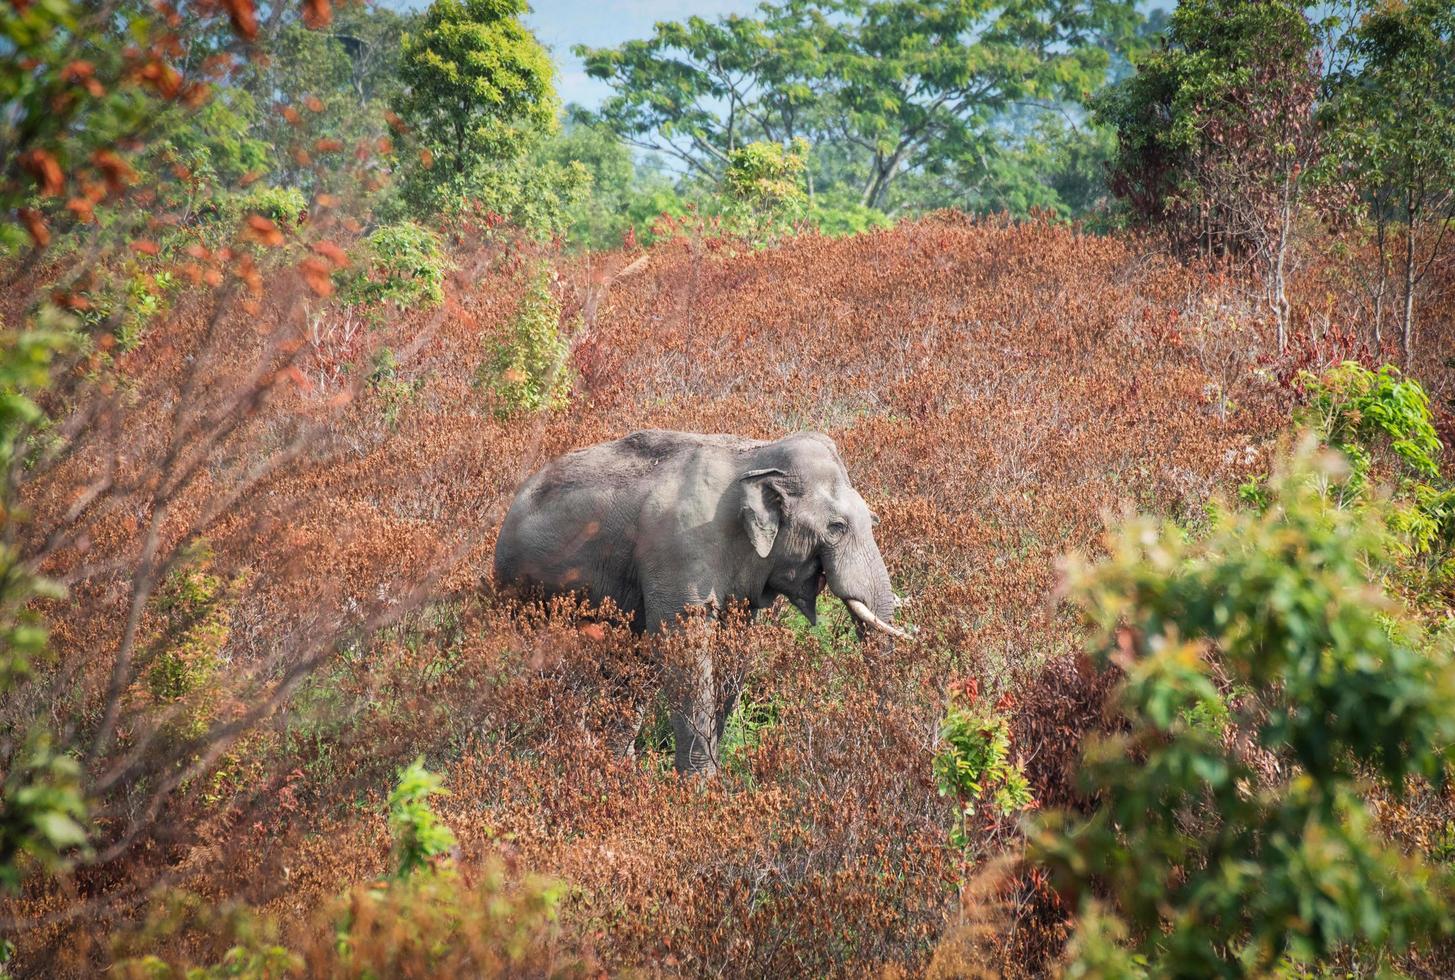 salvaje elefante comiendo comida en natural ambiente temporada hoja árbol cambio color en el fauna silvestre santuario foto